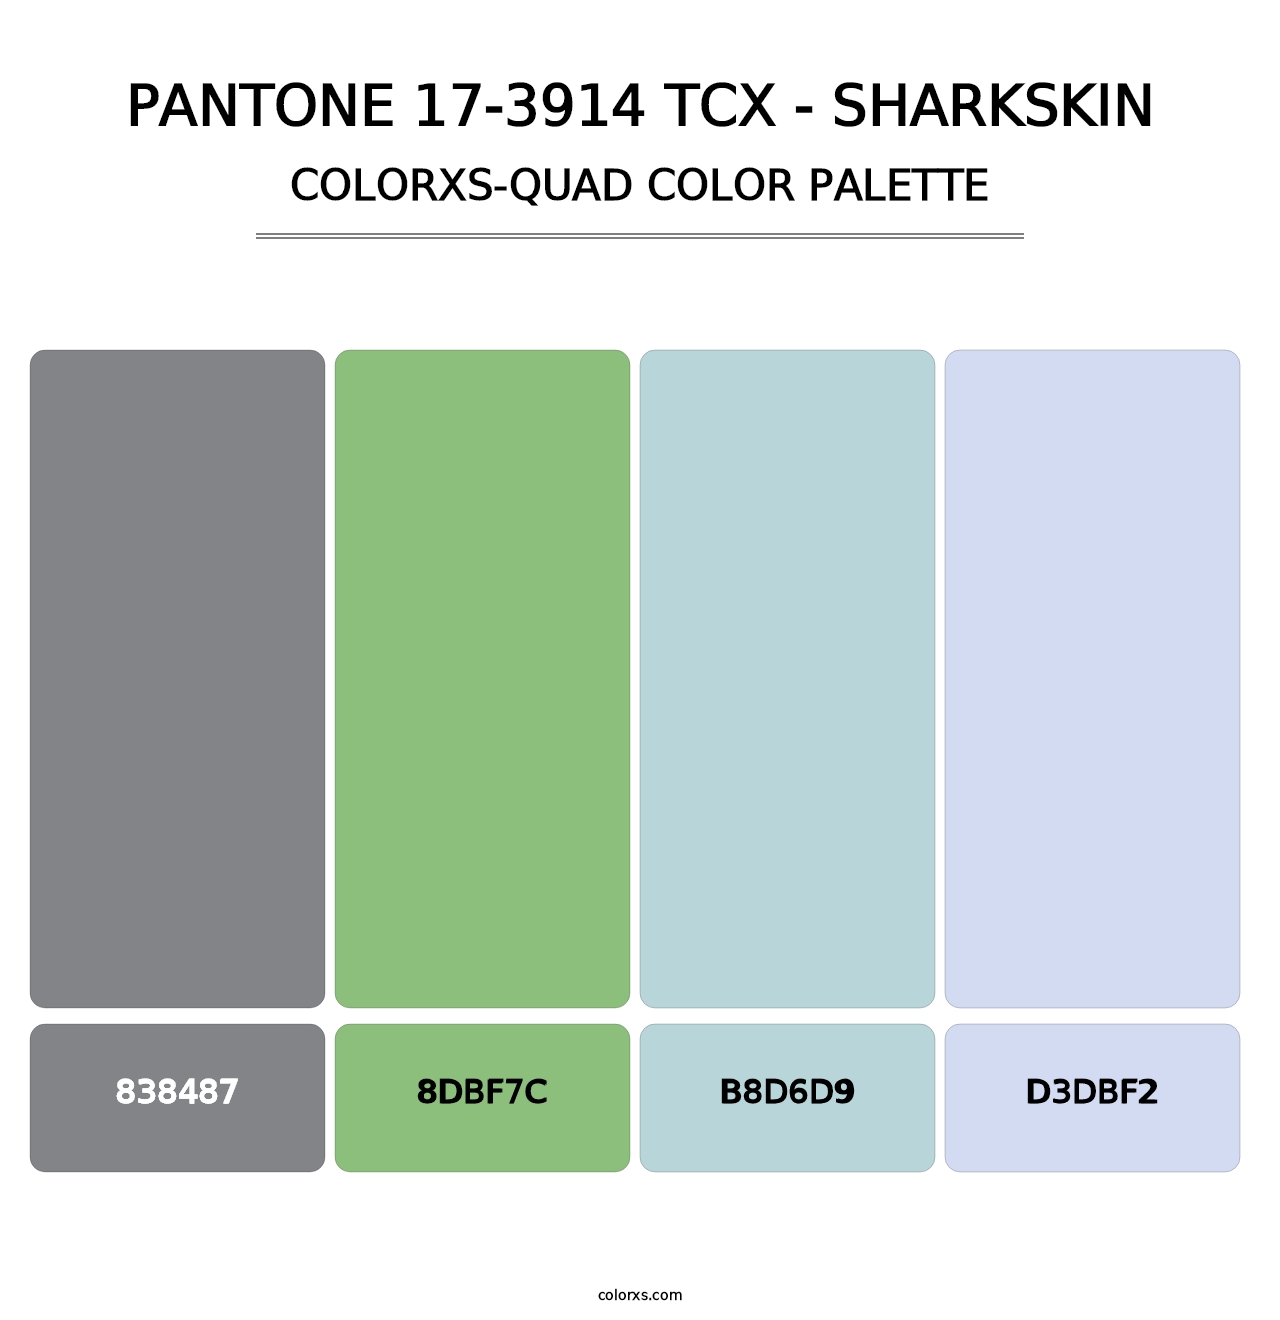 PANTONE 17-3914 TCX - Sharkskin - Colorxs Quad Palette